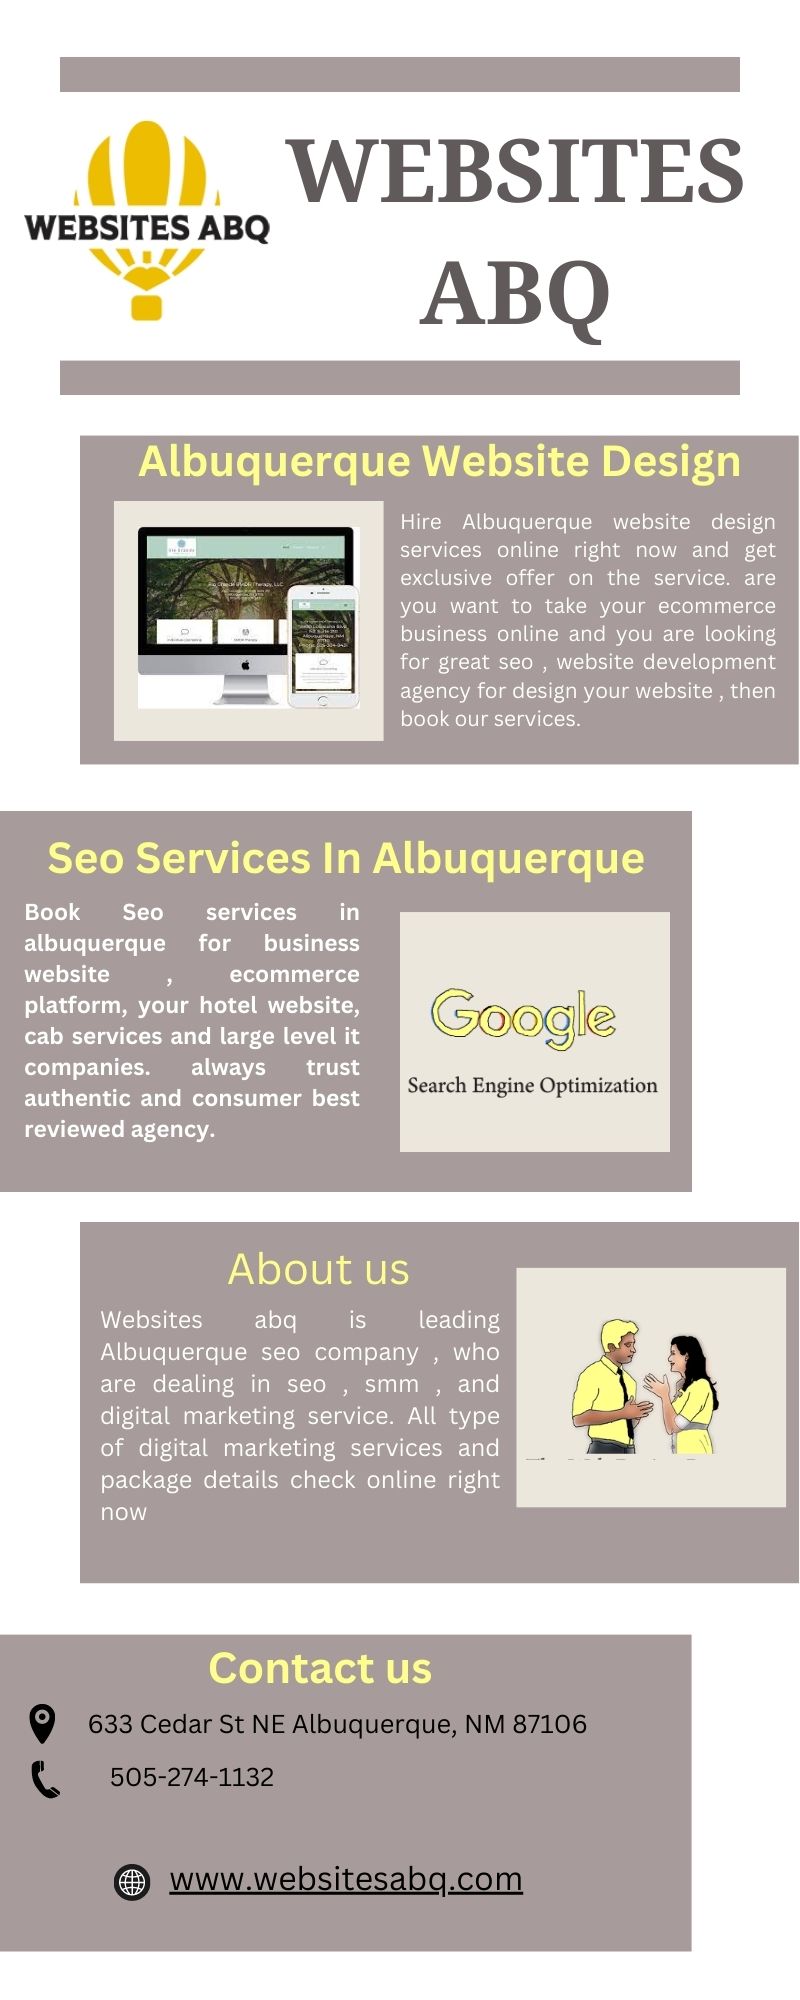 Albuquerque Website Design